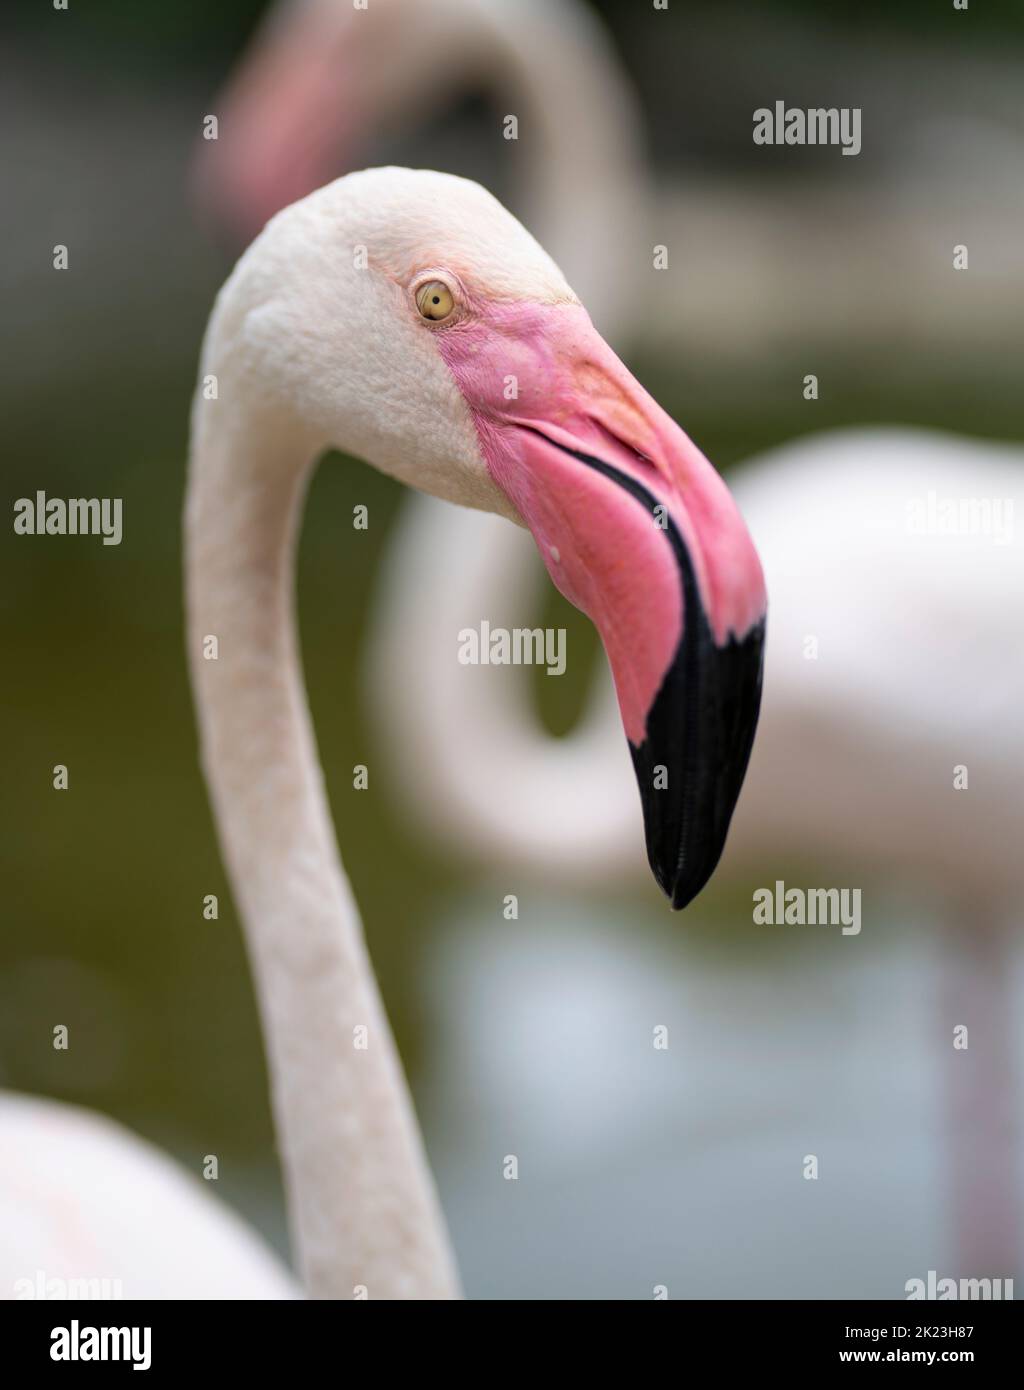 Flamingo at Neo Park, Nago, Okinawa. Stock Photo